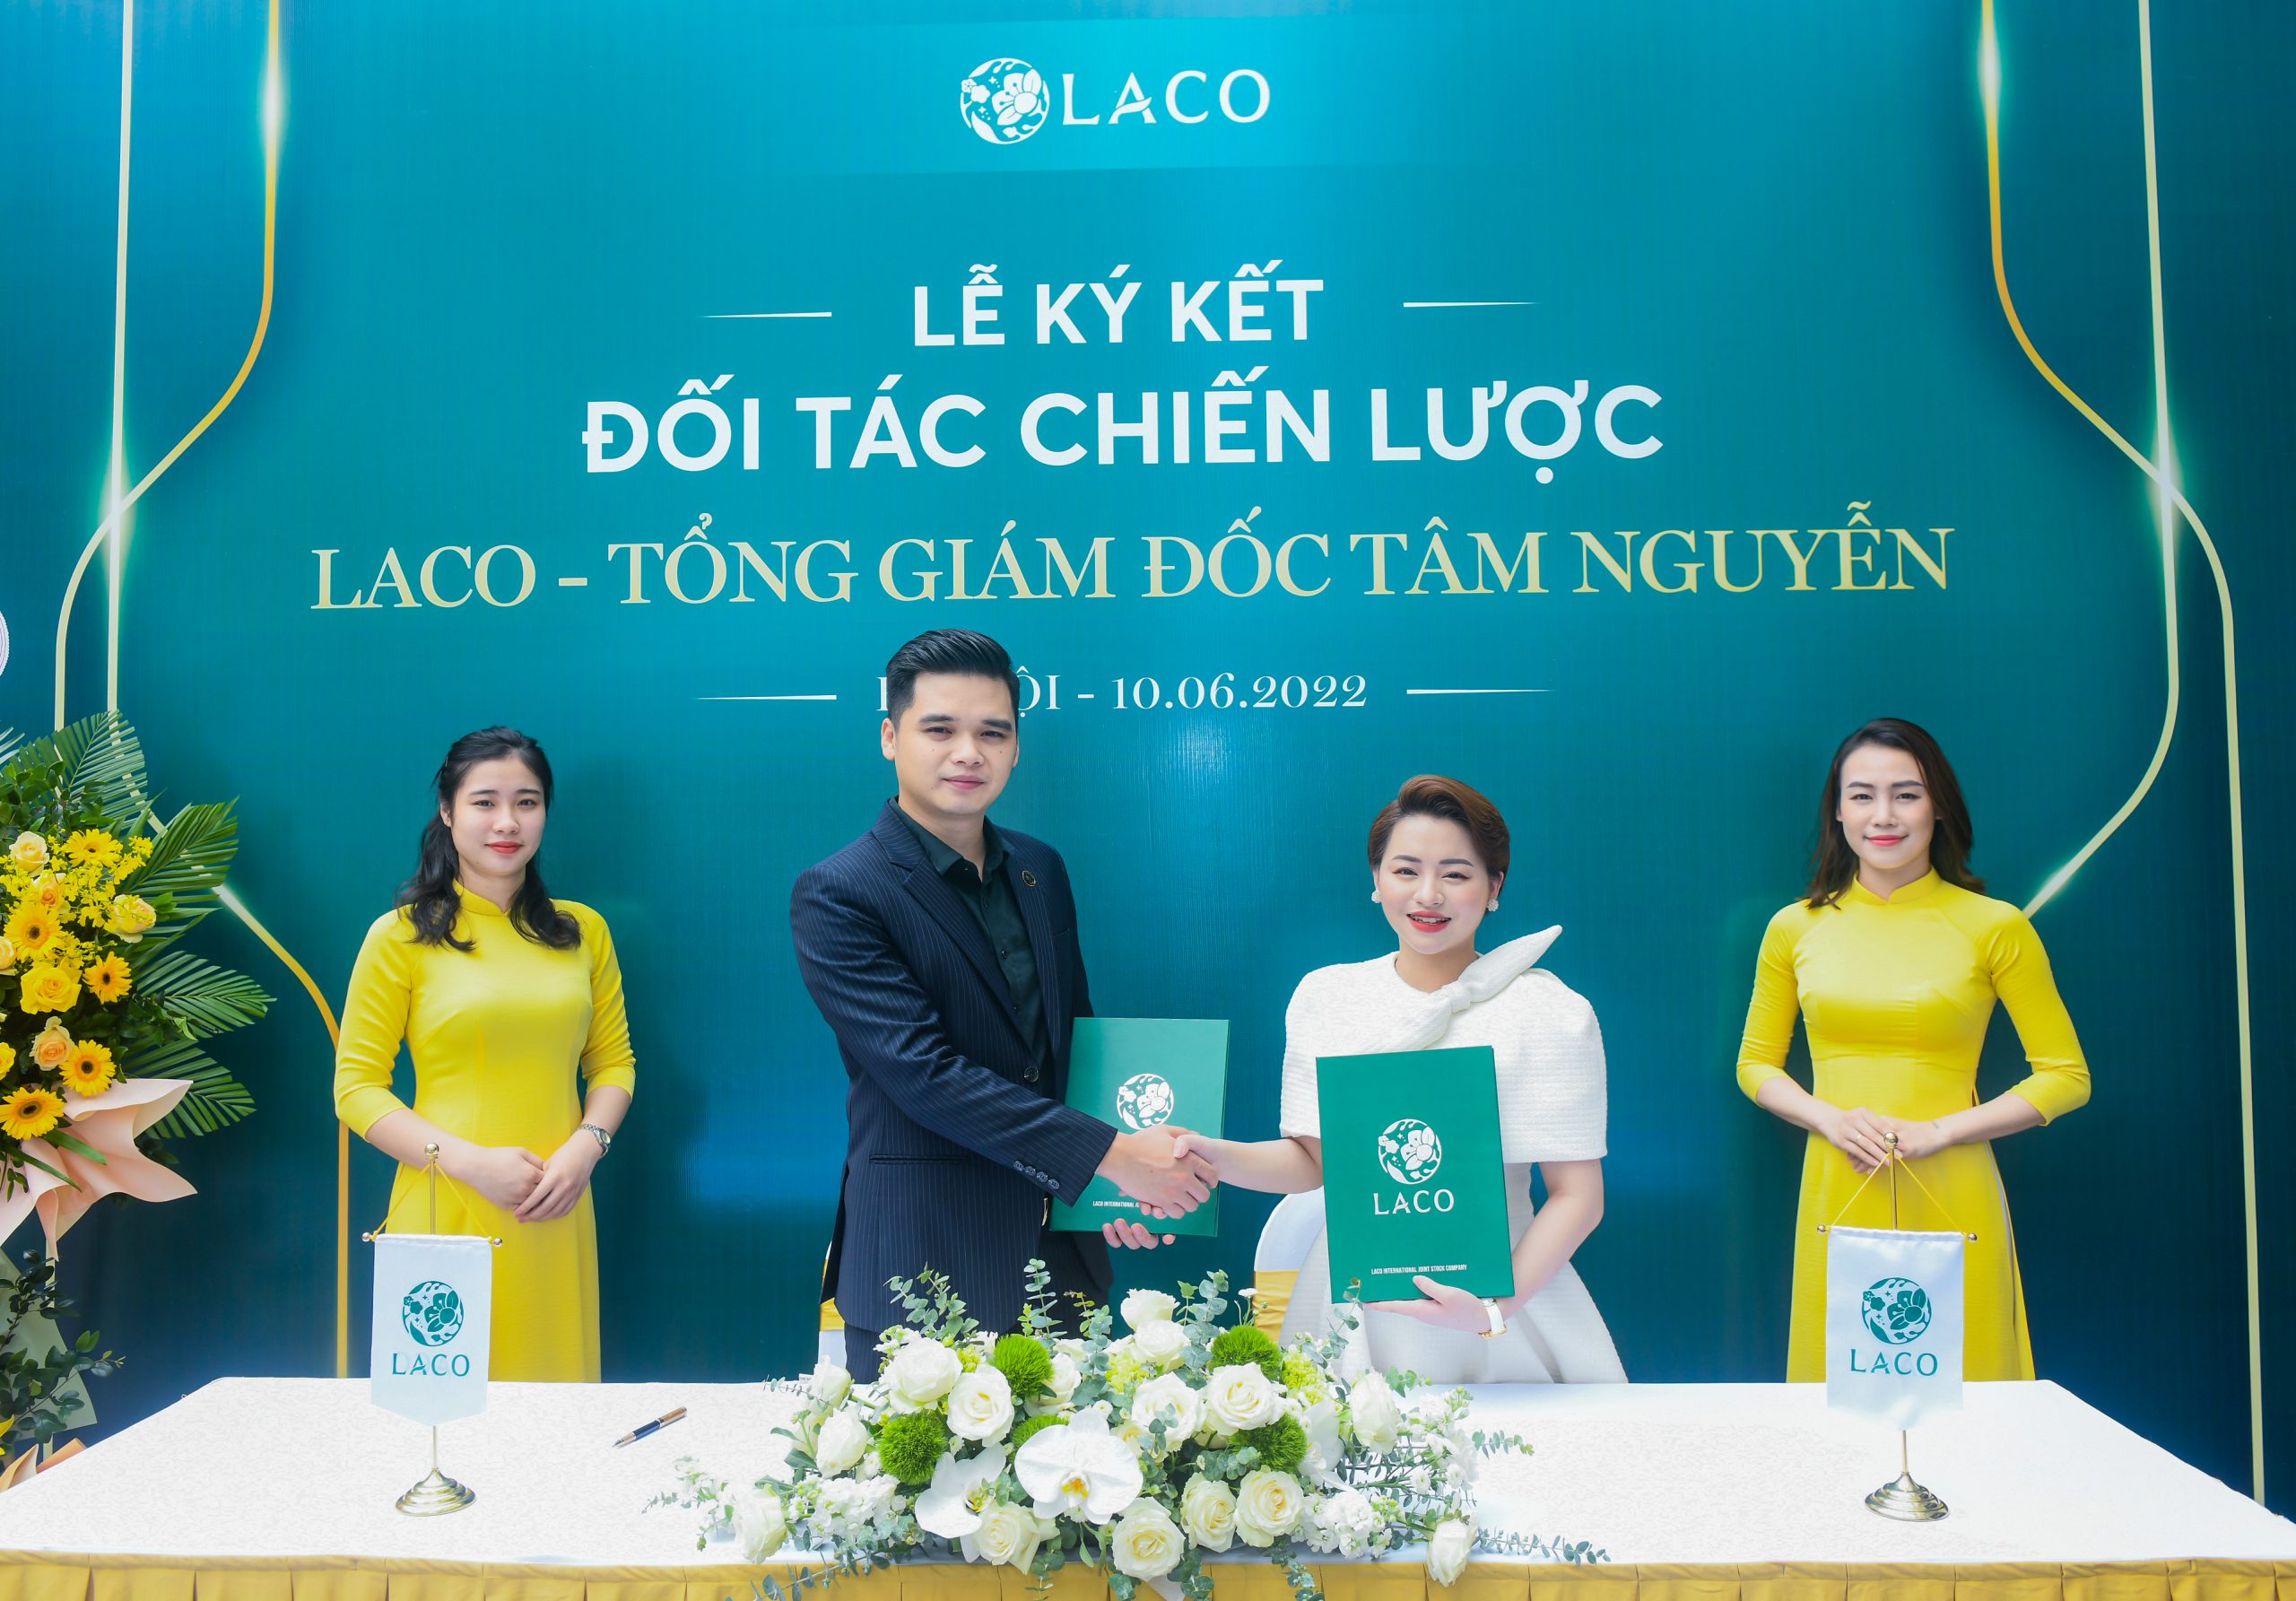 Chúc mừng TGĐ. Tâm Nguyễn trở thành đối tác chiến lược quan trọng của Công ty Cổ phần Quốc tế Laco